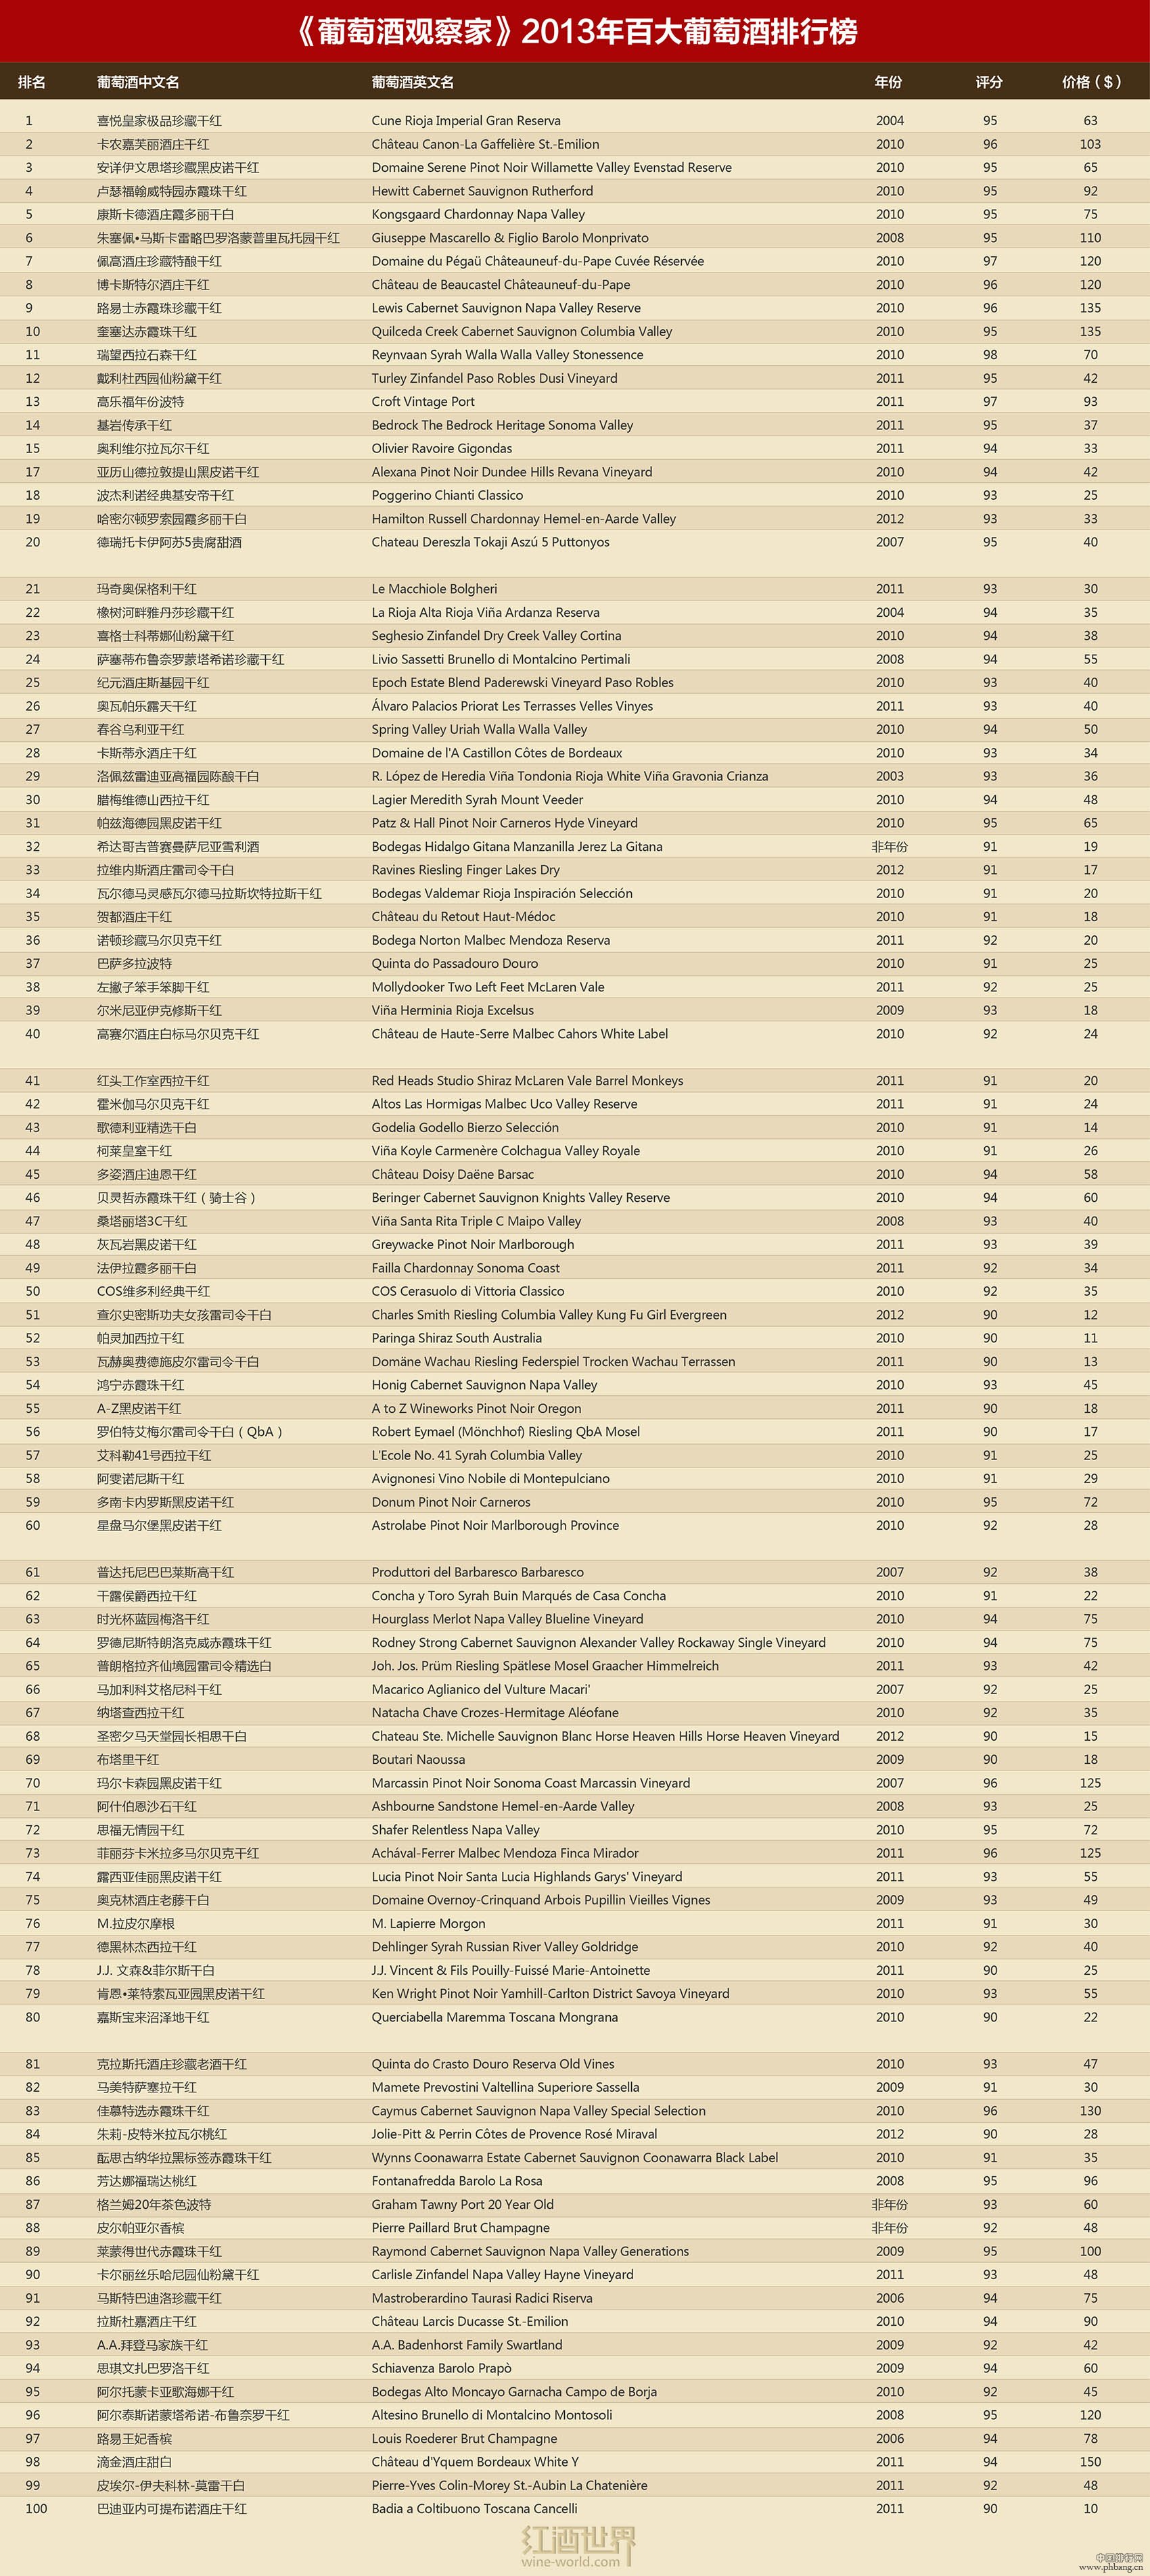 《葡萄酒观察家》2013百大葡萄酒排行榜